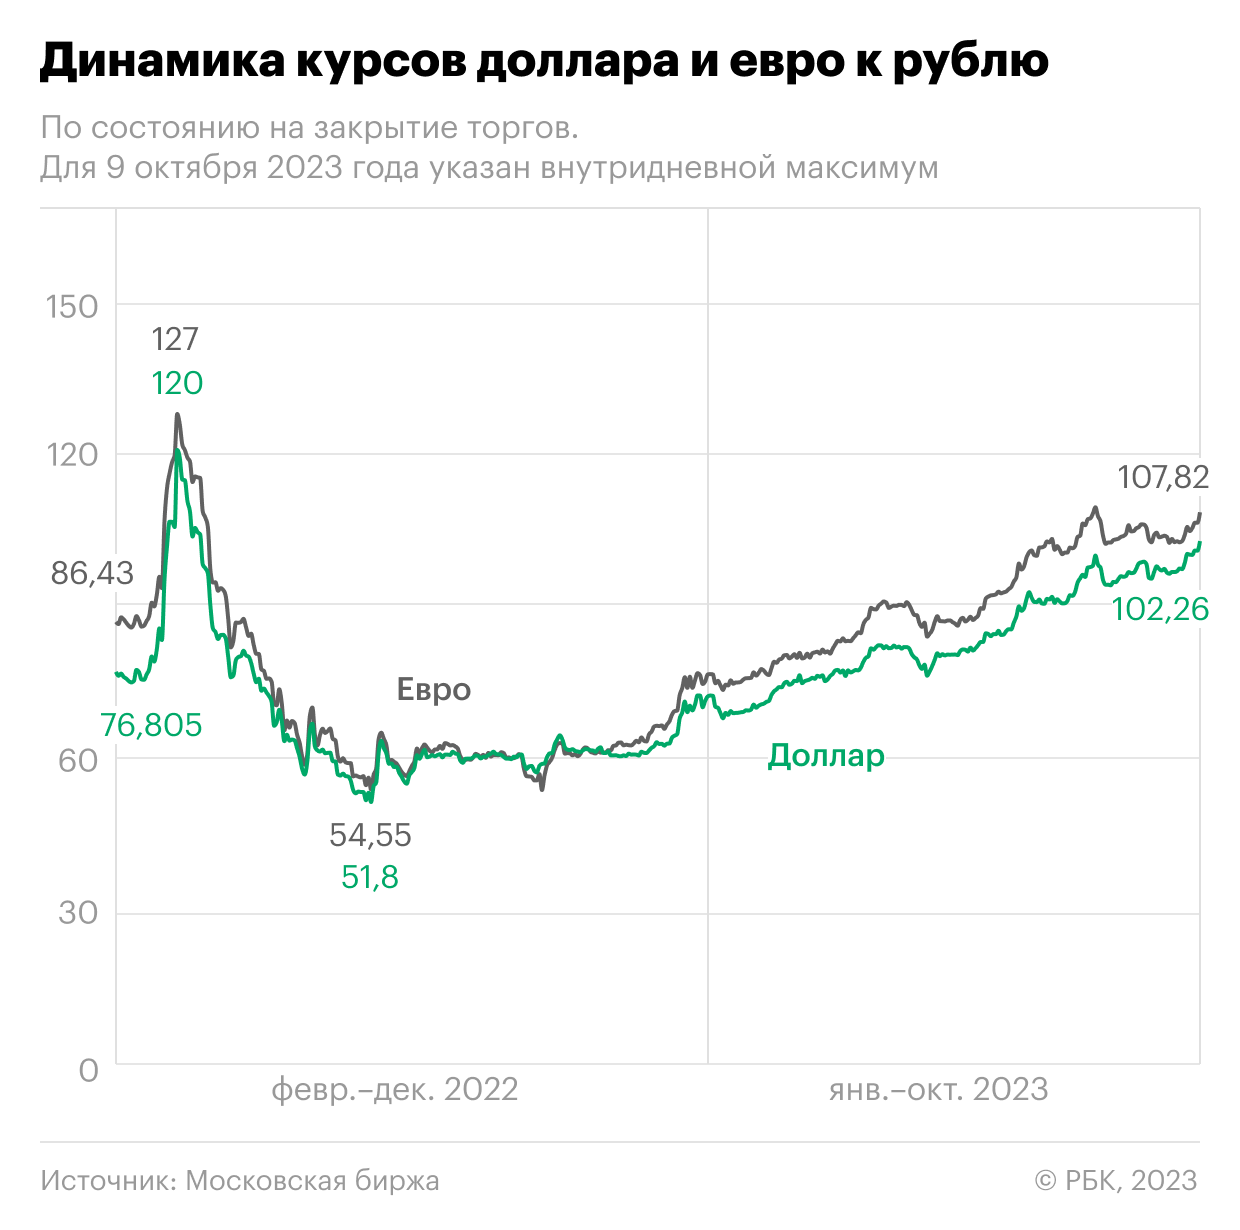 Как рубль закончил неделю после падения к доллару и евро. Инфографика — РБК